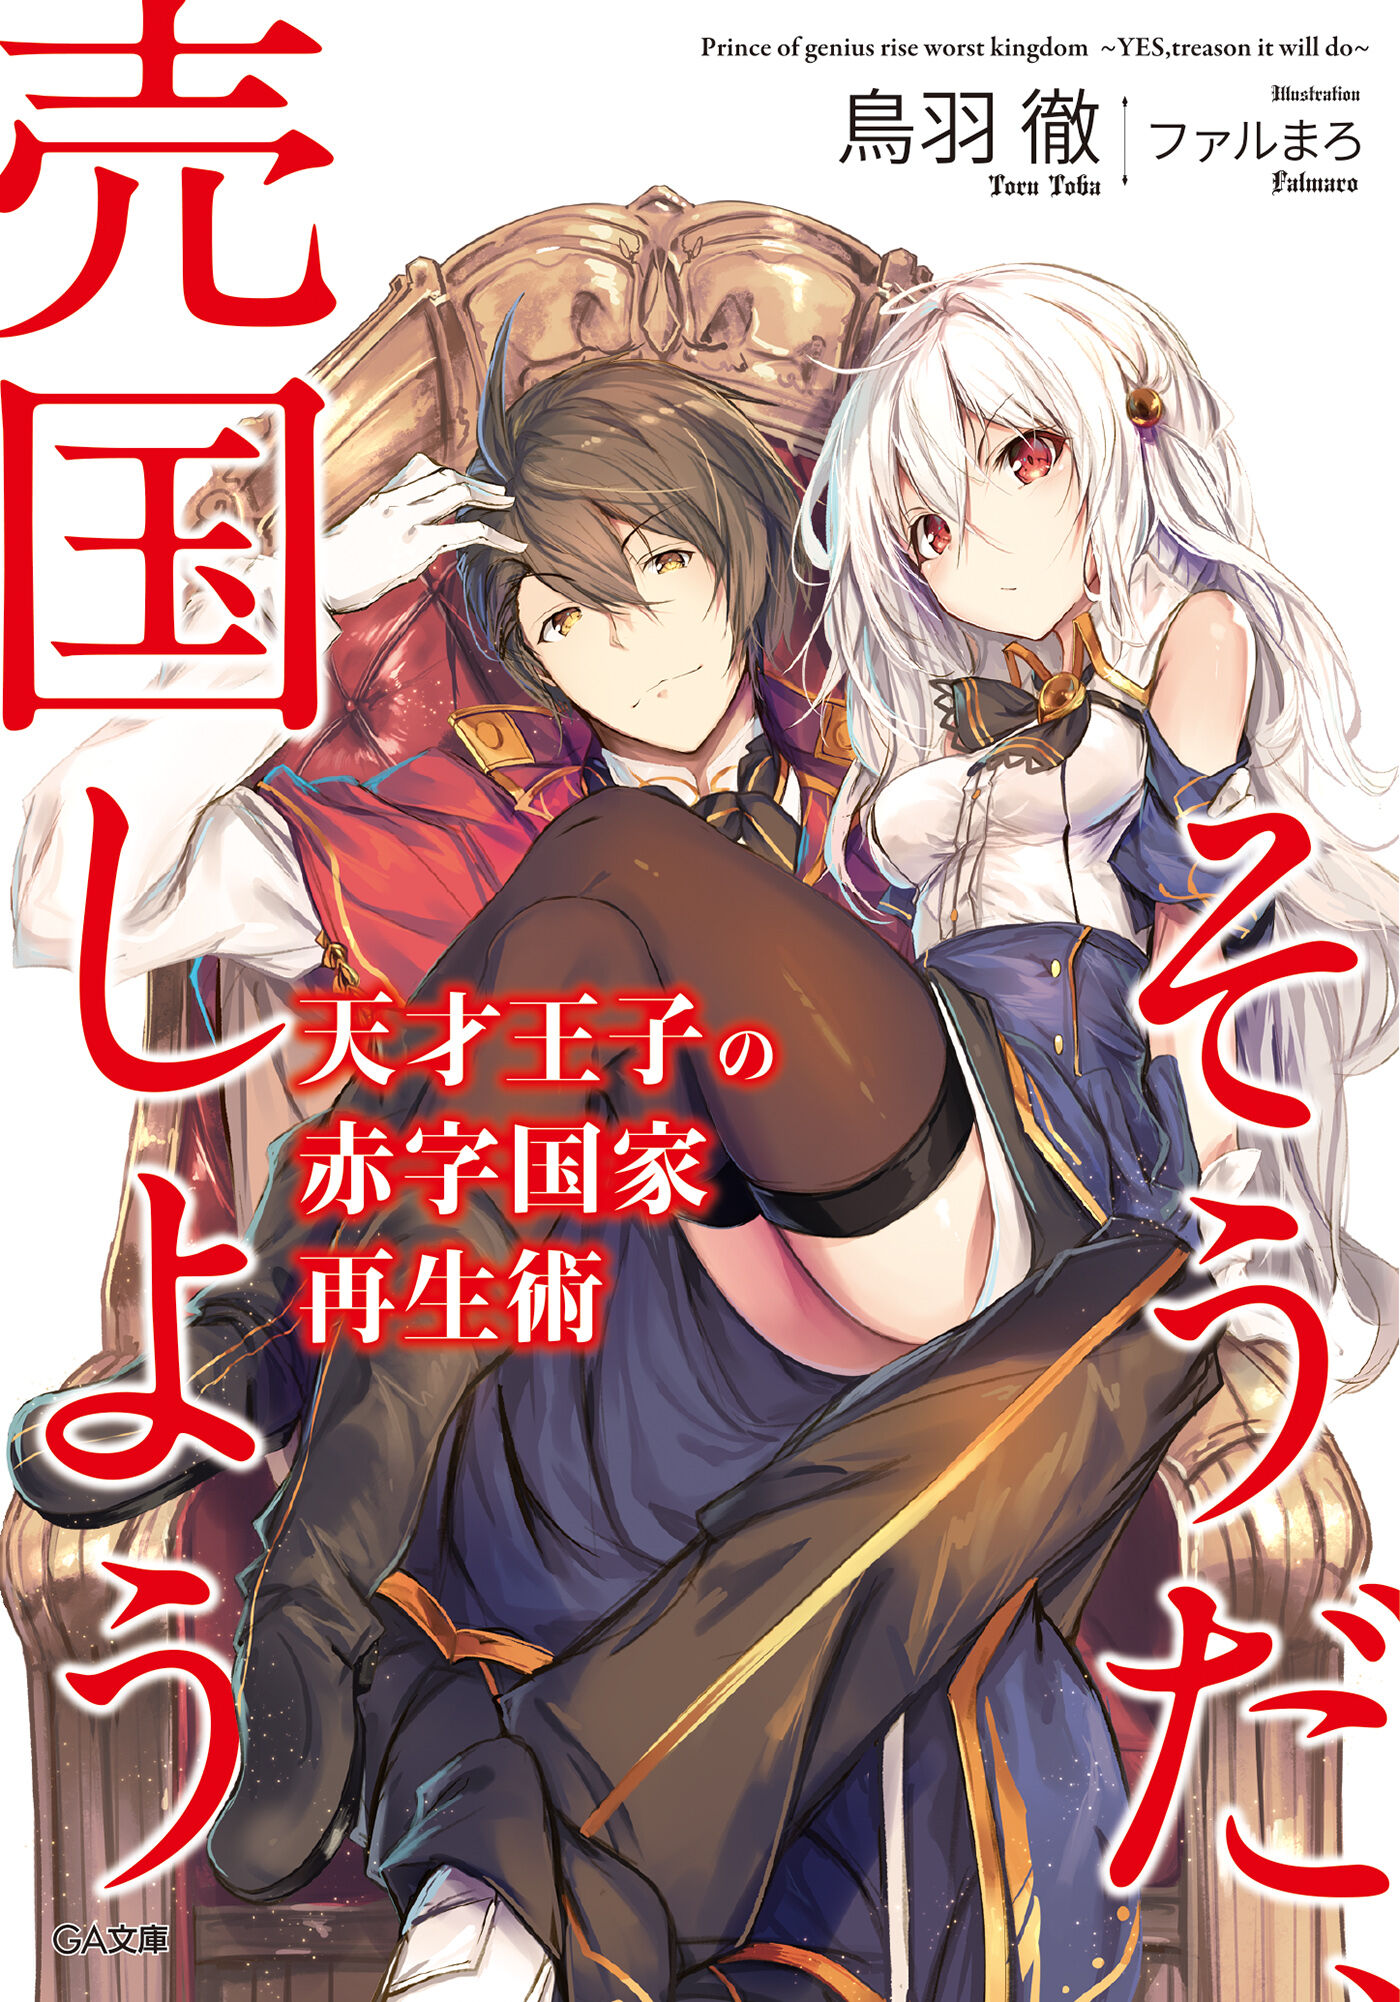 Light Novel Volume 12, Tensai Ouji no Akaji Wiki